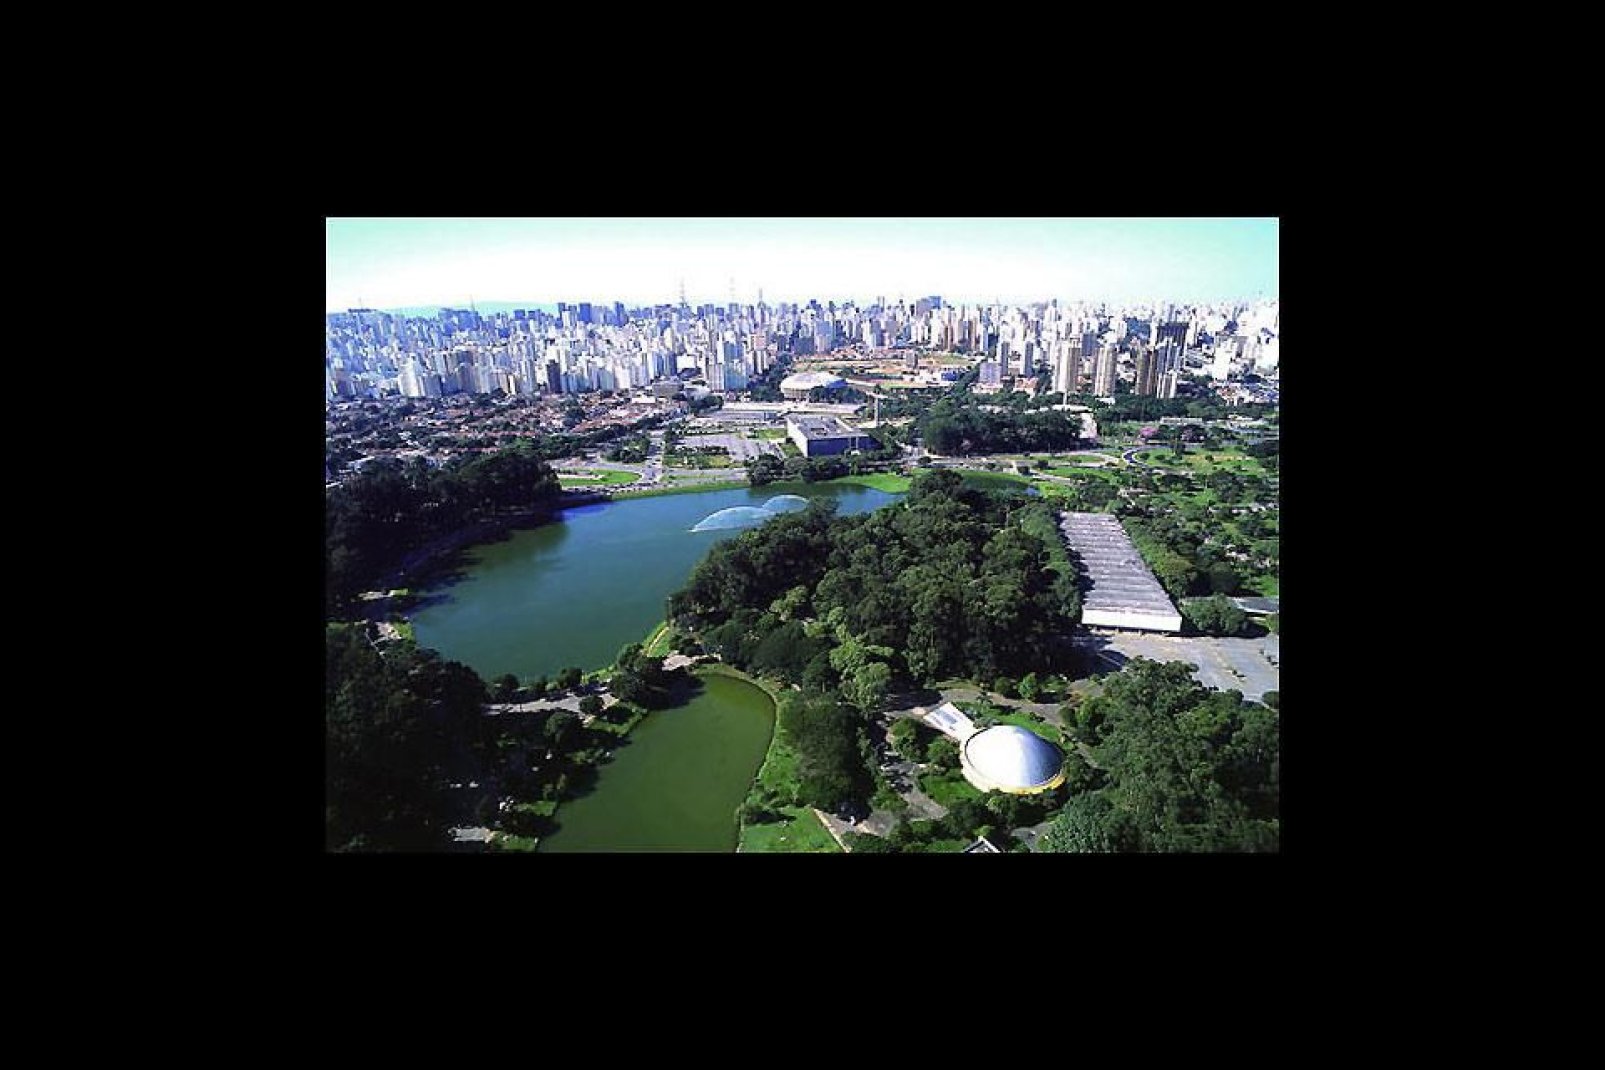 Le plus grand parc public de la ville avec 1,5 million de mètres carrés d'aires vertes.